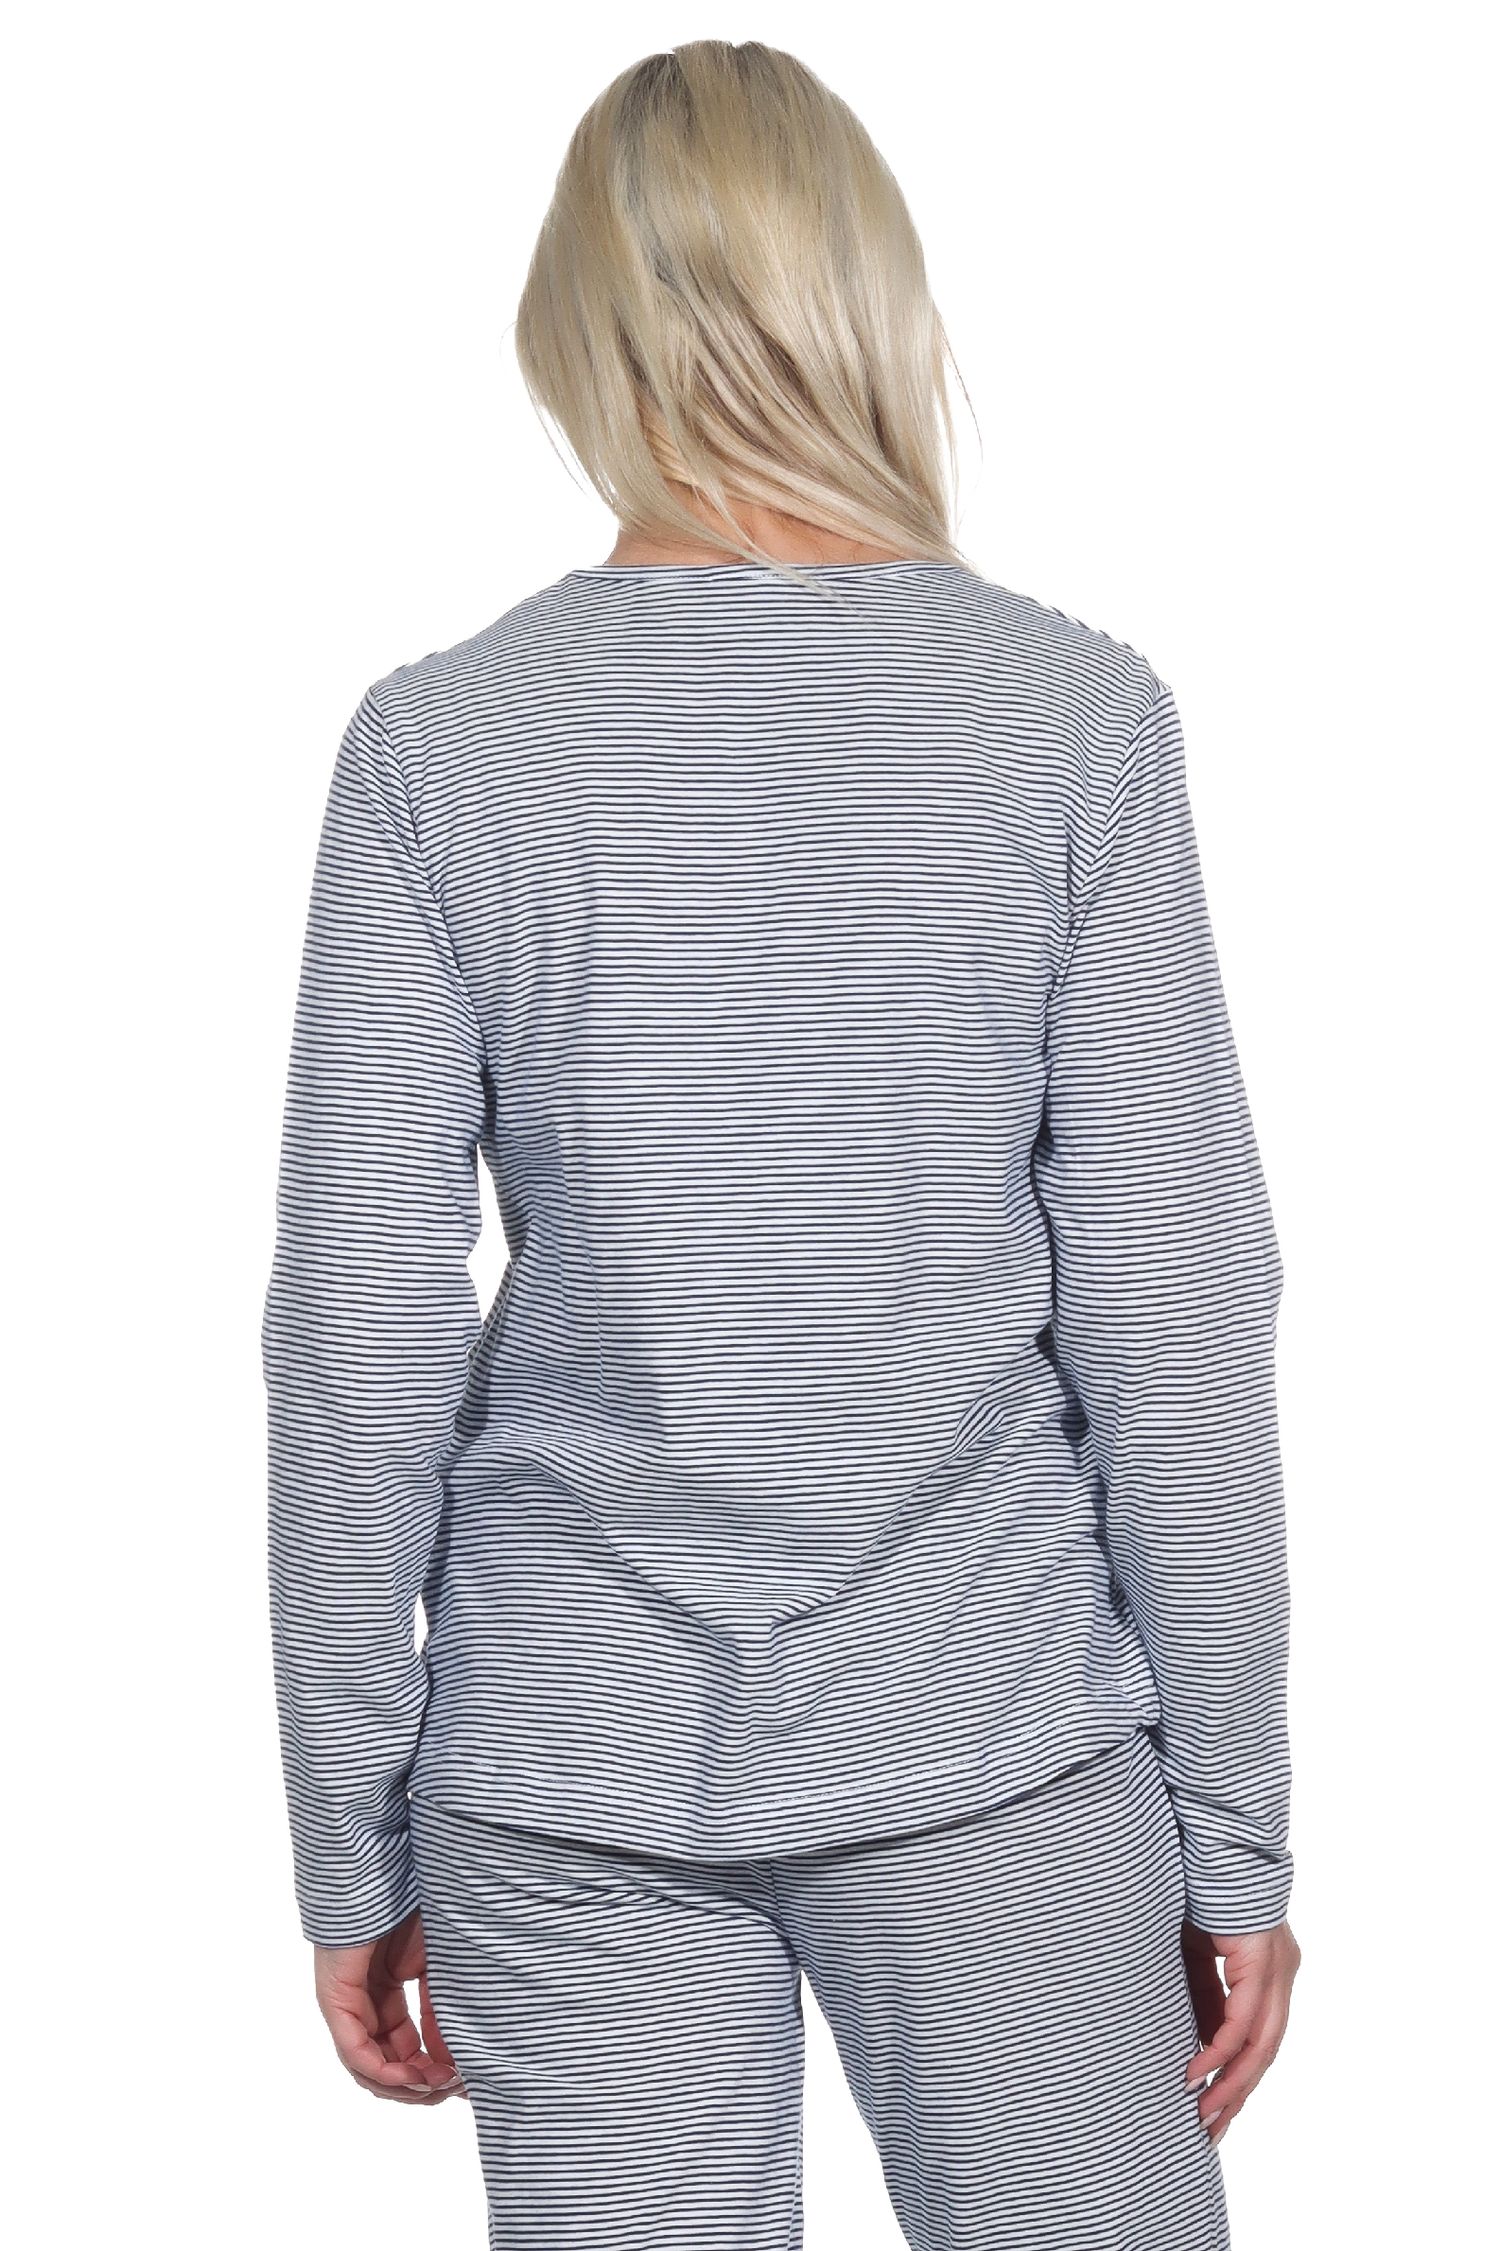 Damen Schlafanzug Shirt langarm Pyjama Oberteil Mix & Match in Streifenoptik